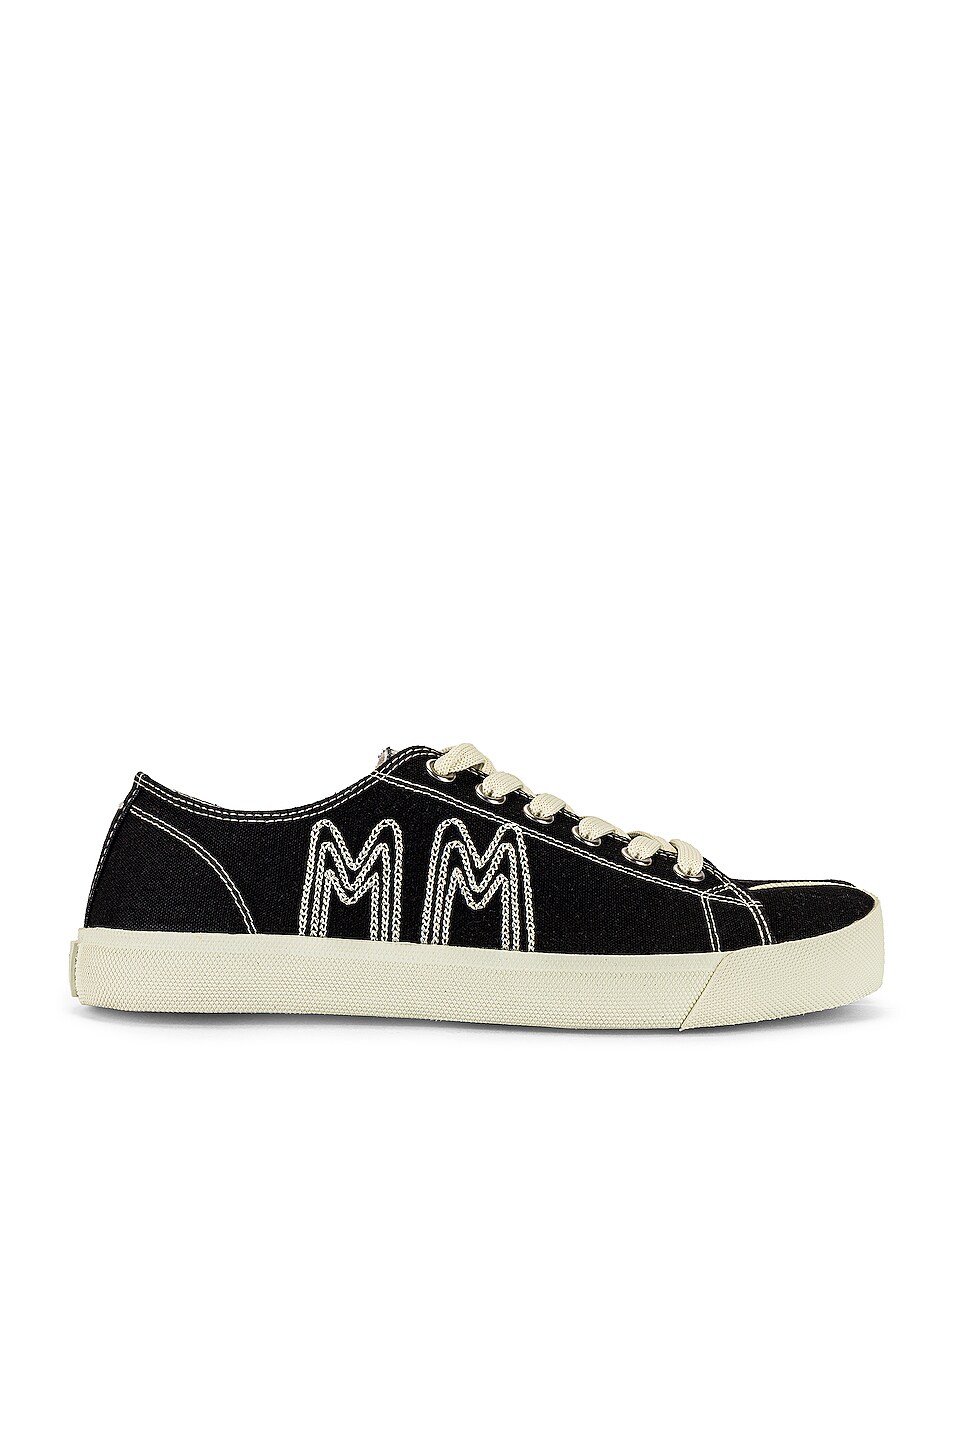 Image 1 of Maison Margiela Tabi Low Top Sneaker in Black in Black & Ecru